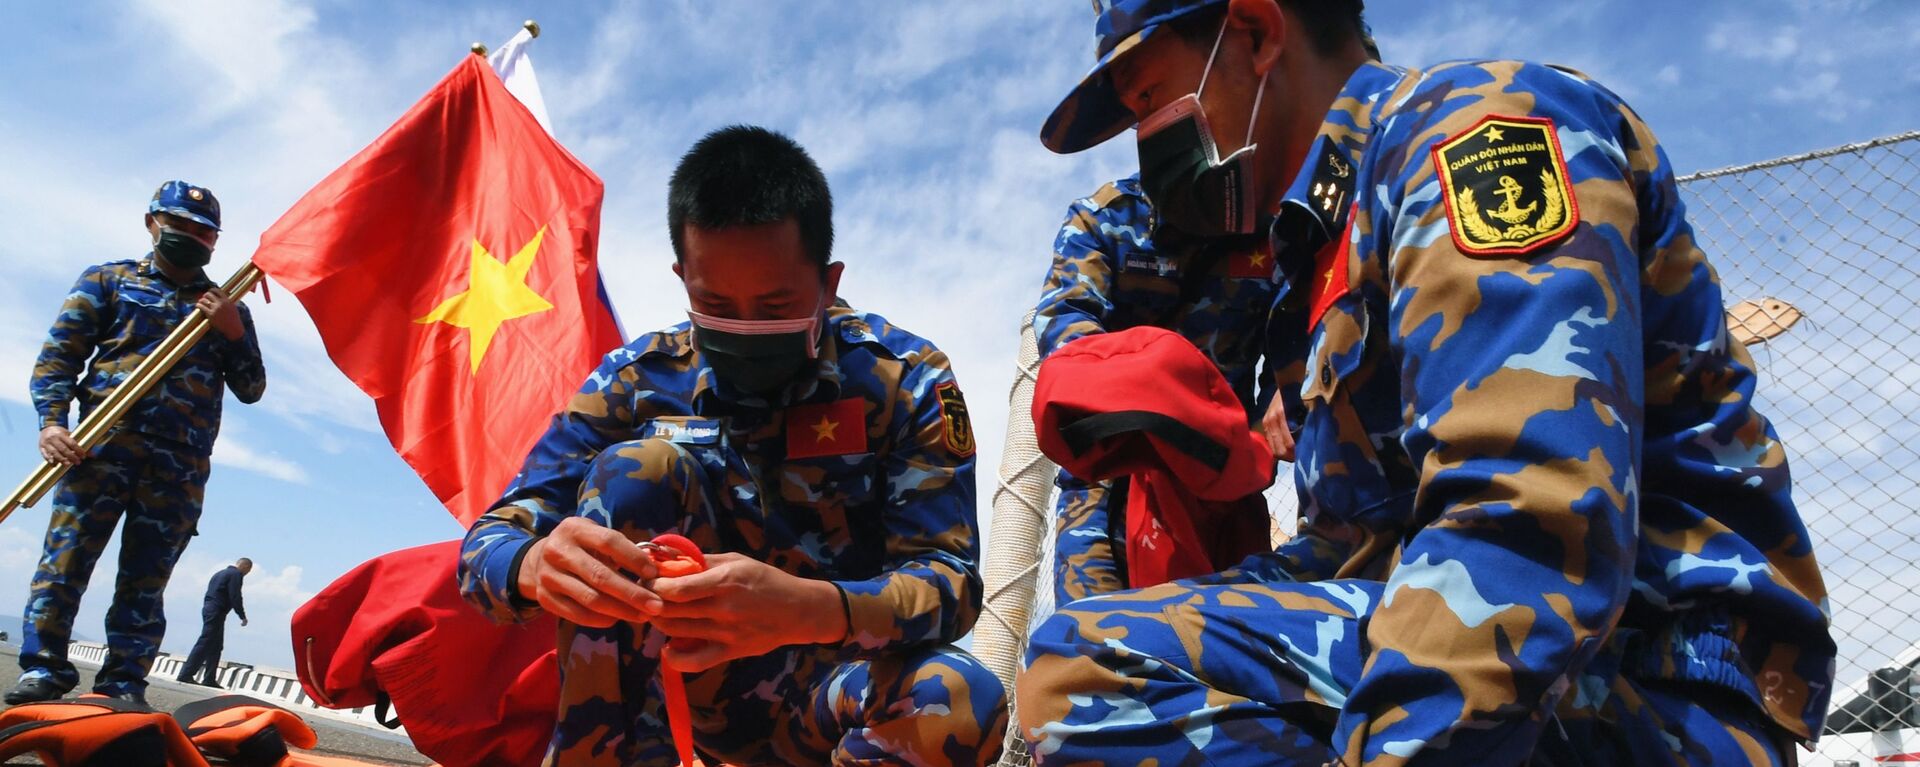 Quân nhân Việt Nam trước khi bắt đầu thi đấu về sử dụng thiết bị cứu sinh trong chặng 3 cuộc thi Cúp Biển tại Vladivostok trong khuôn khổ Hội thao Quân đội Quốc tế lần thứ VII Army Games-2021 - Sputnik Việt Nam, 1920, 23.12.2021